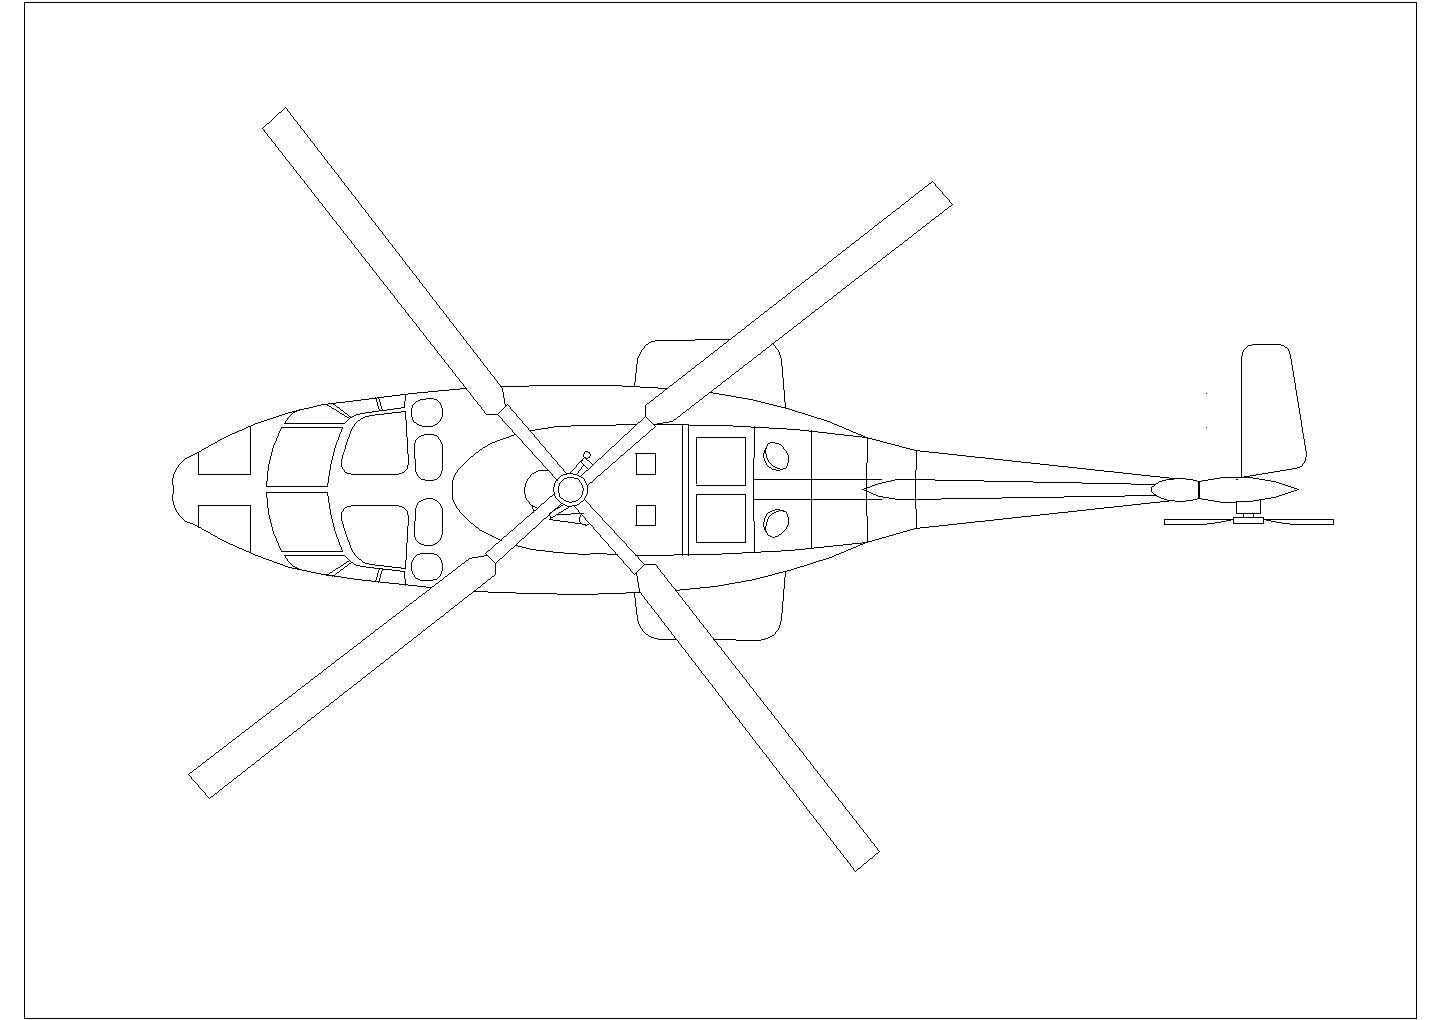 某飞机CAD完整构造详细施工图纸